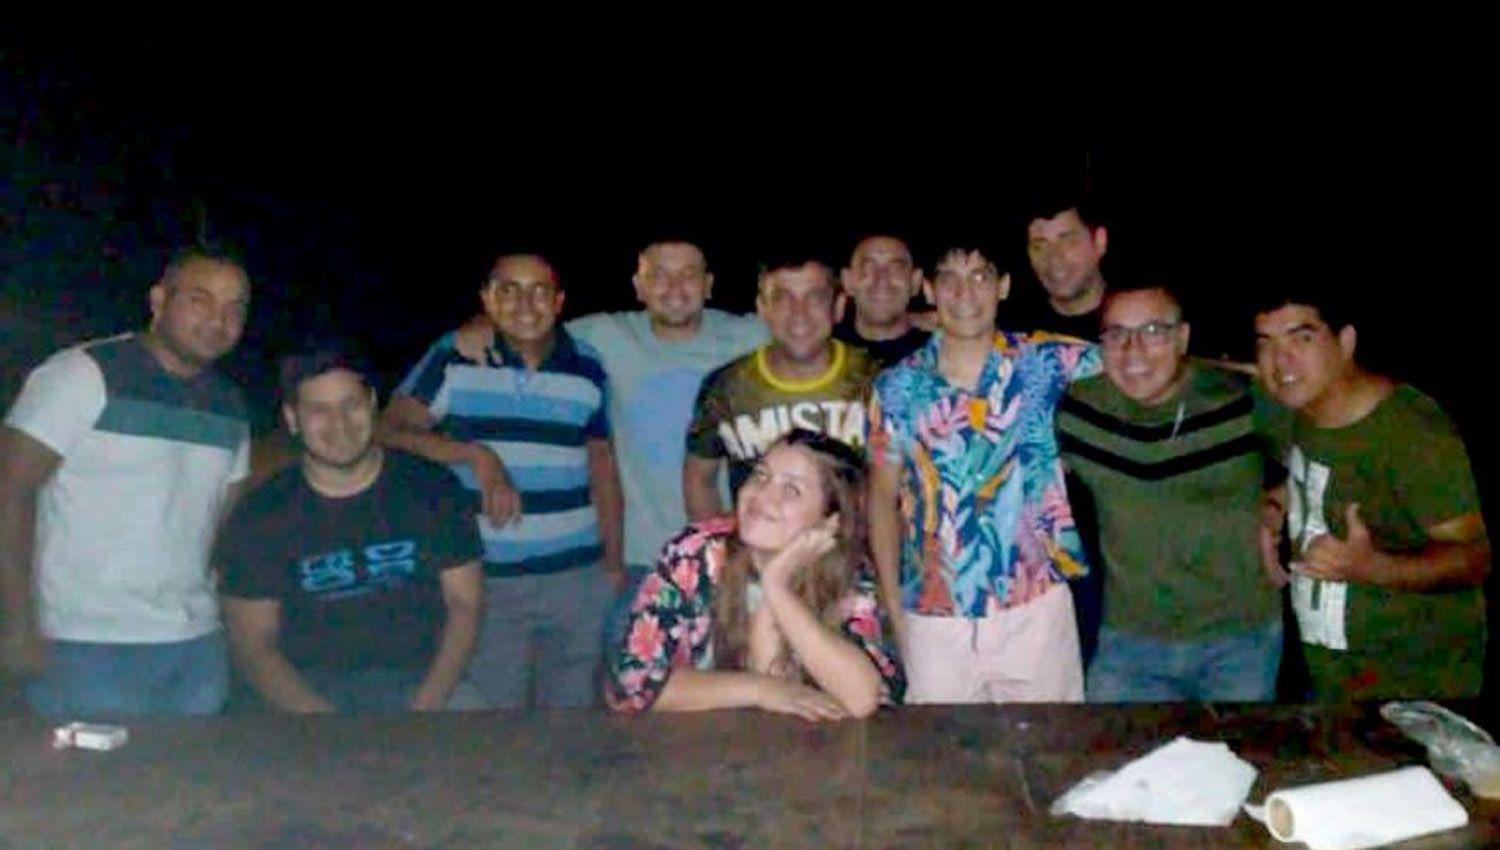 Indignacioacuten- Policiacuteas del Chaco festejaron el cumpleantildeos de una agente